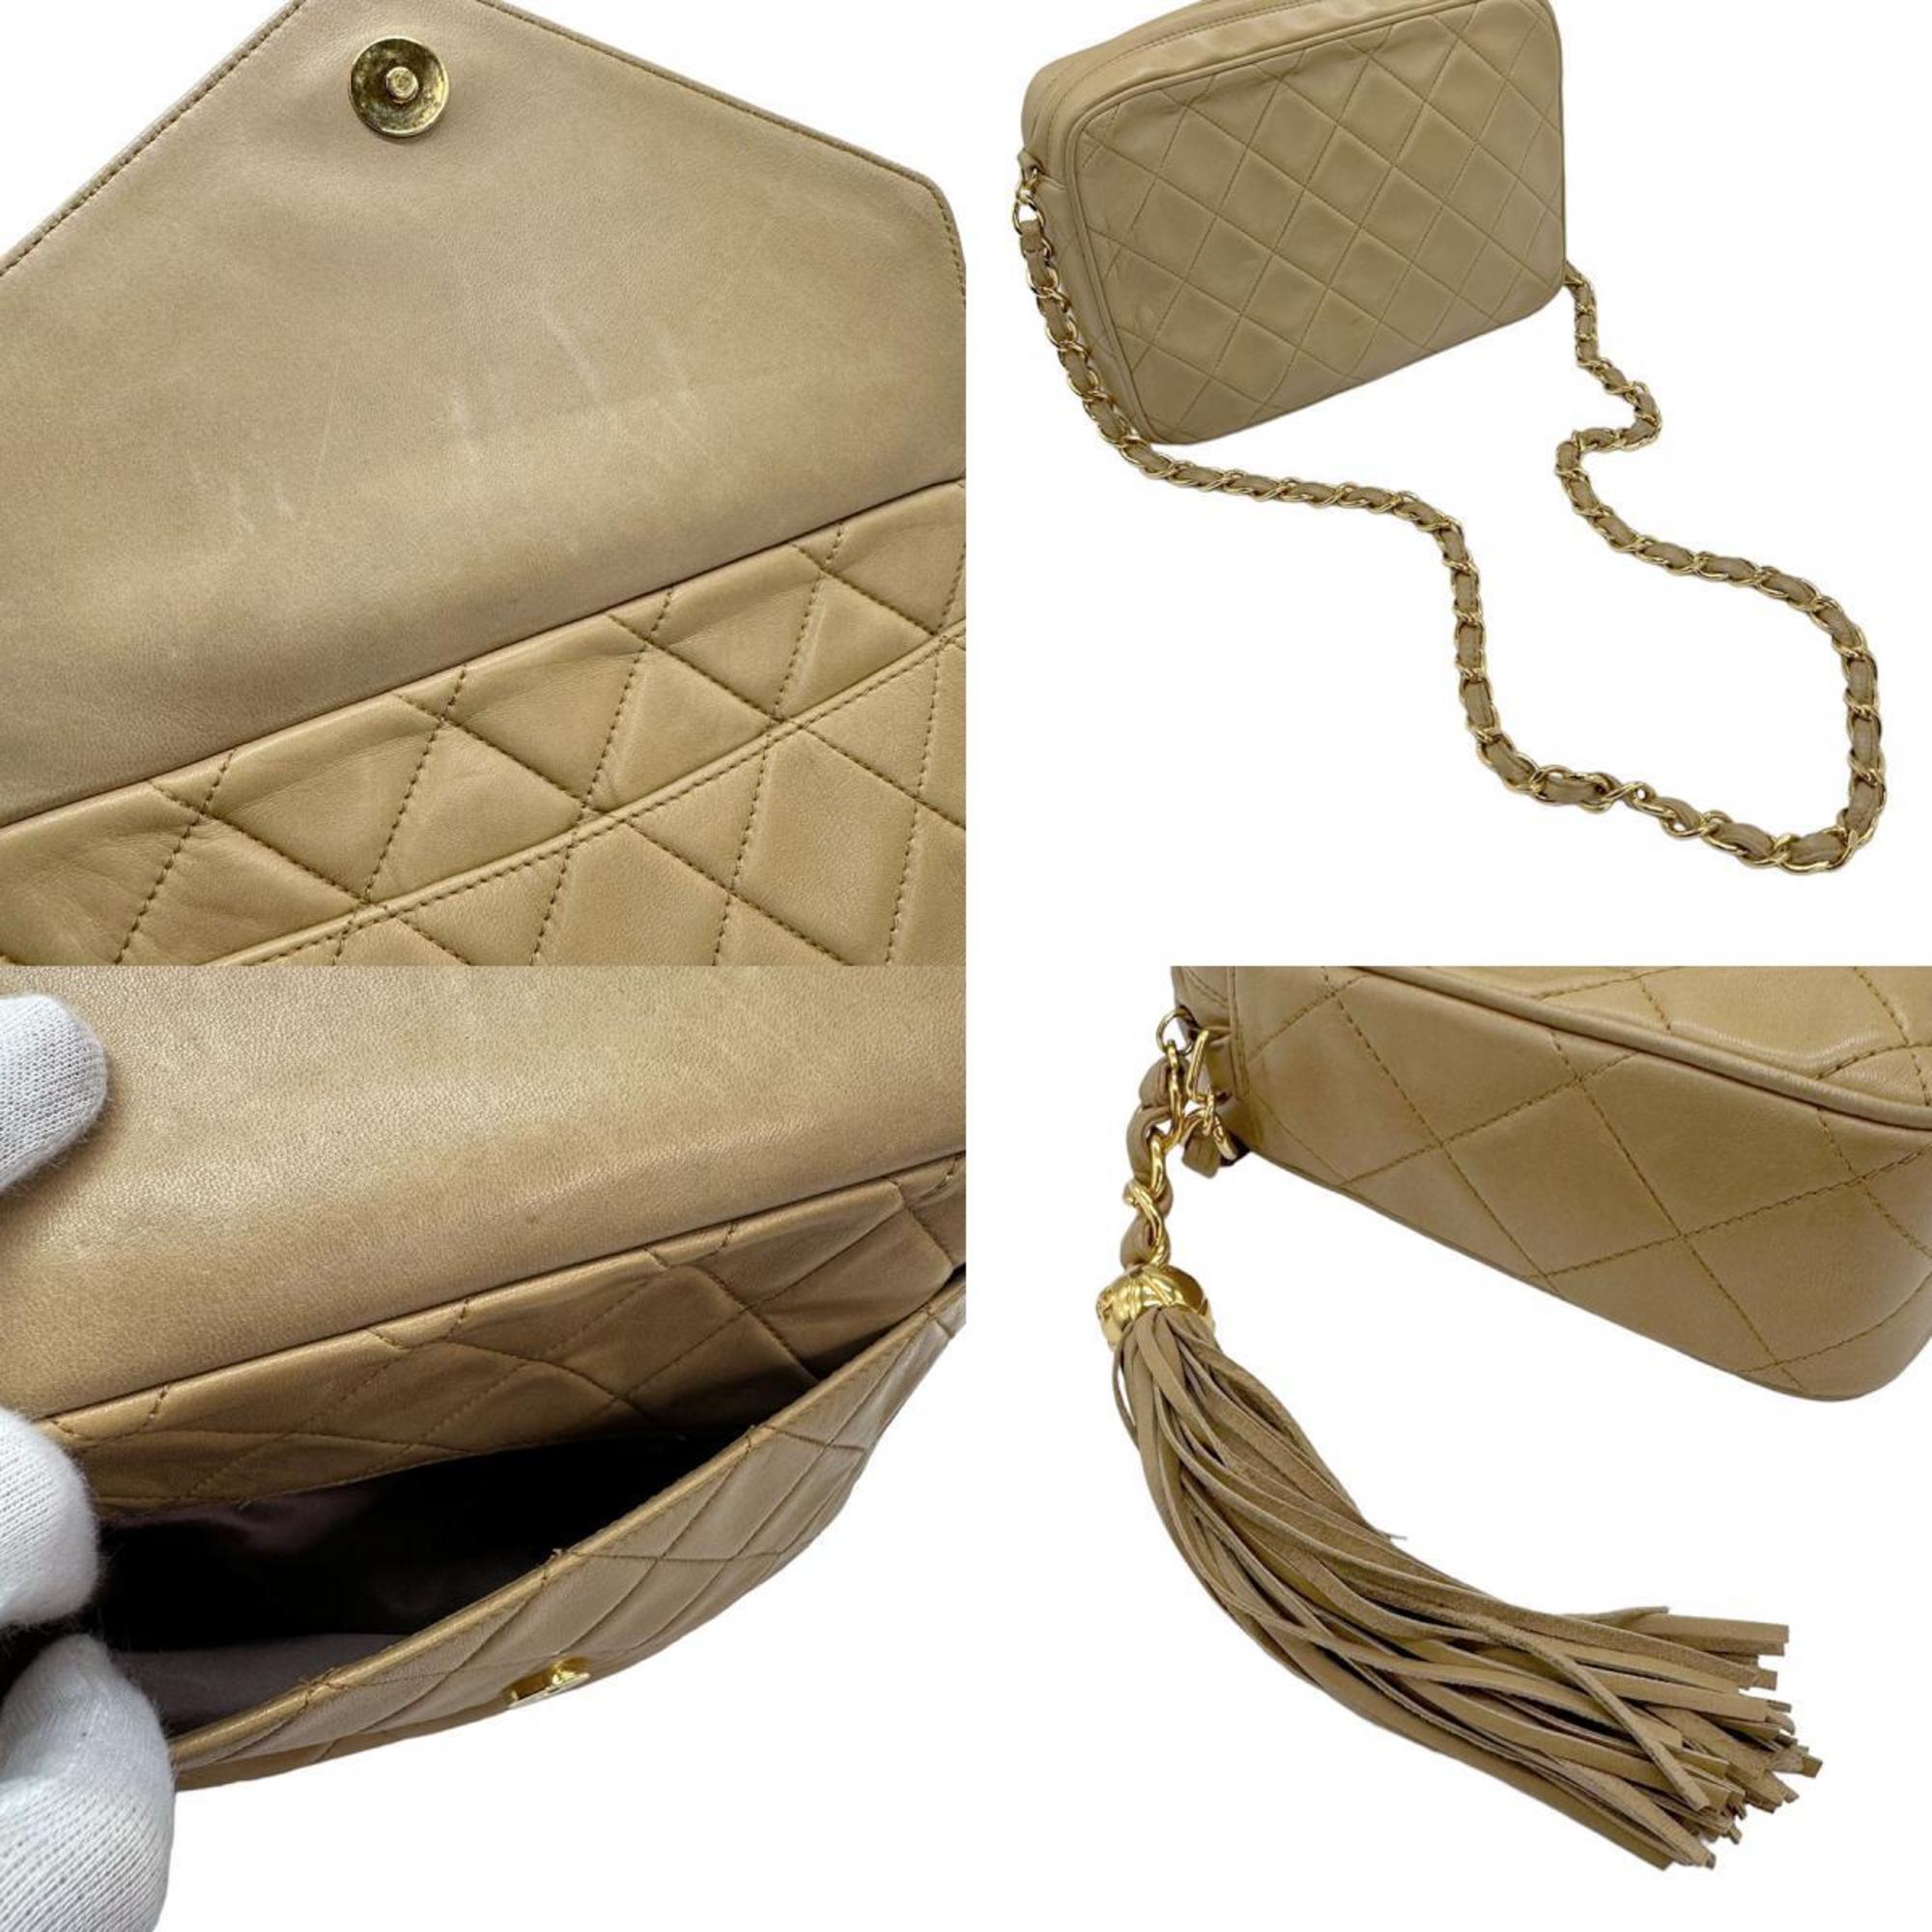 CHANEL shoulder bag, lambskin, beige, women's, z0790